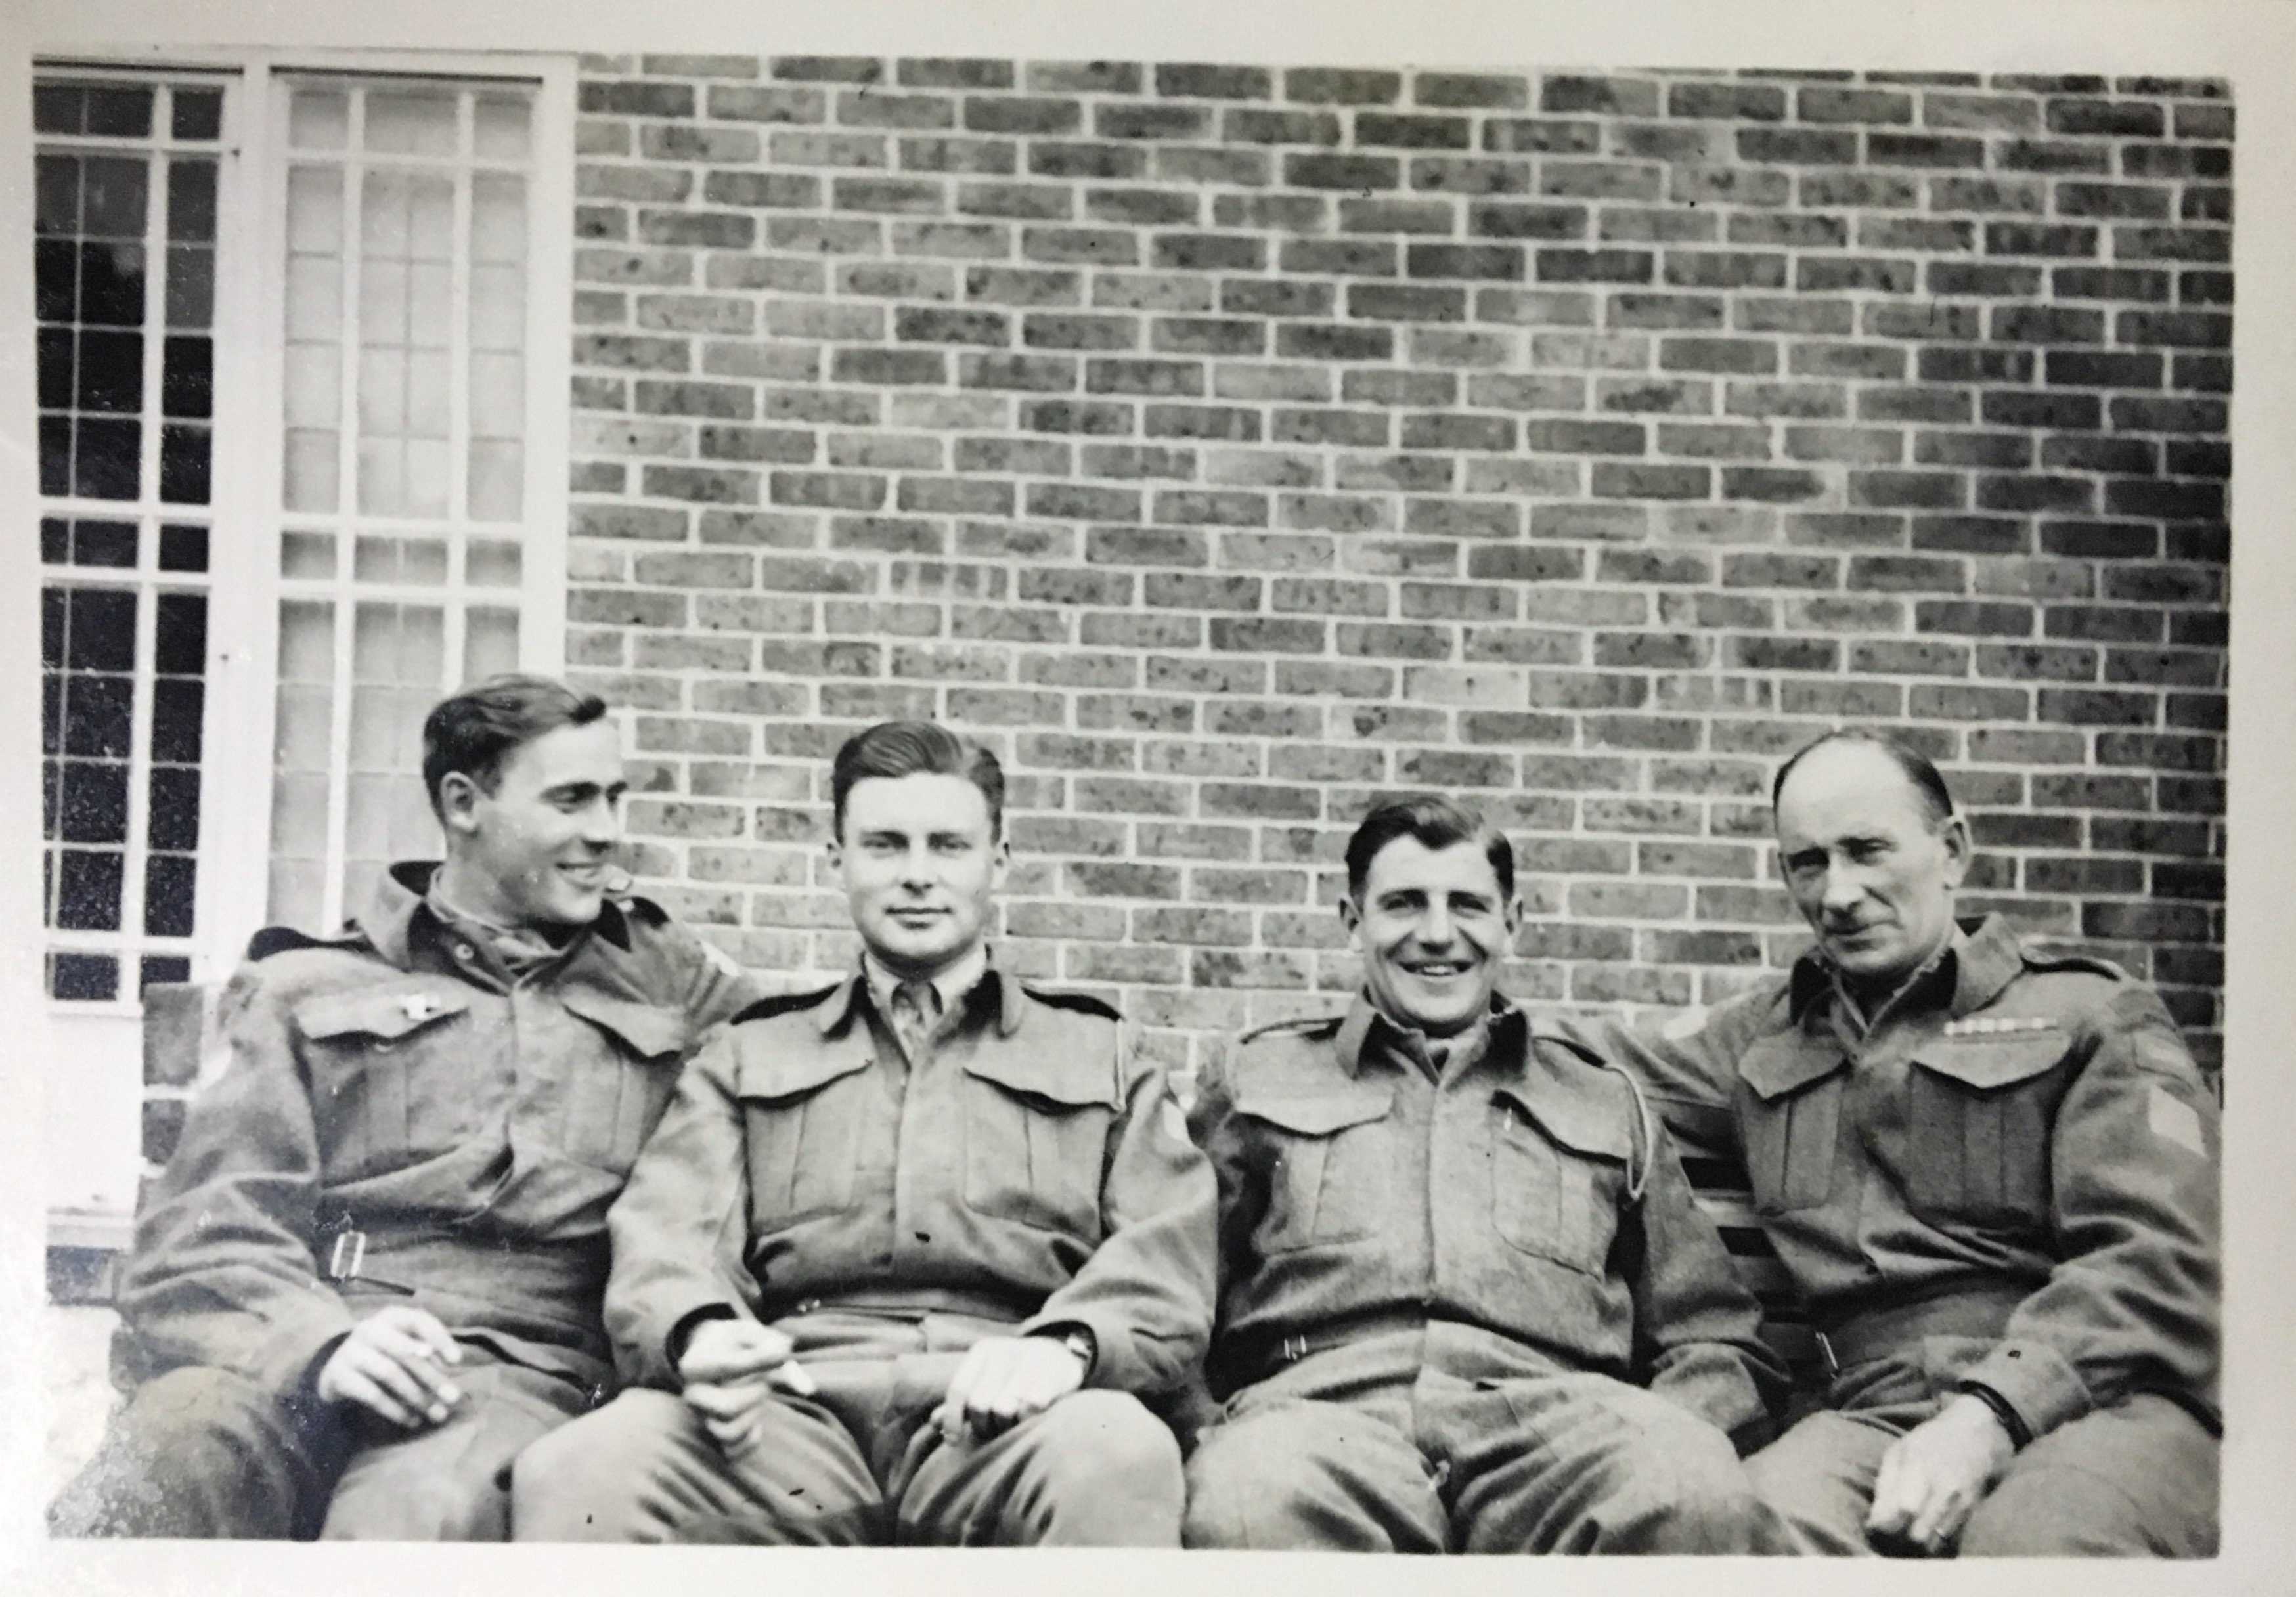 Photographie en noir et blanc – Archie, complètement à droite, est assis sur un banc avec trois hommes beaucoup plus jeunes. Tous sont en uniforme. Ils sourient.